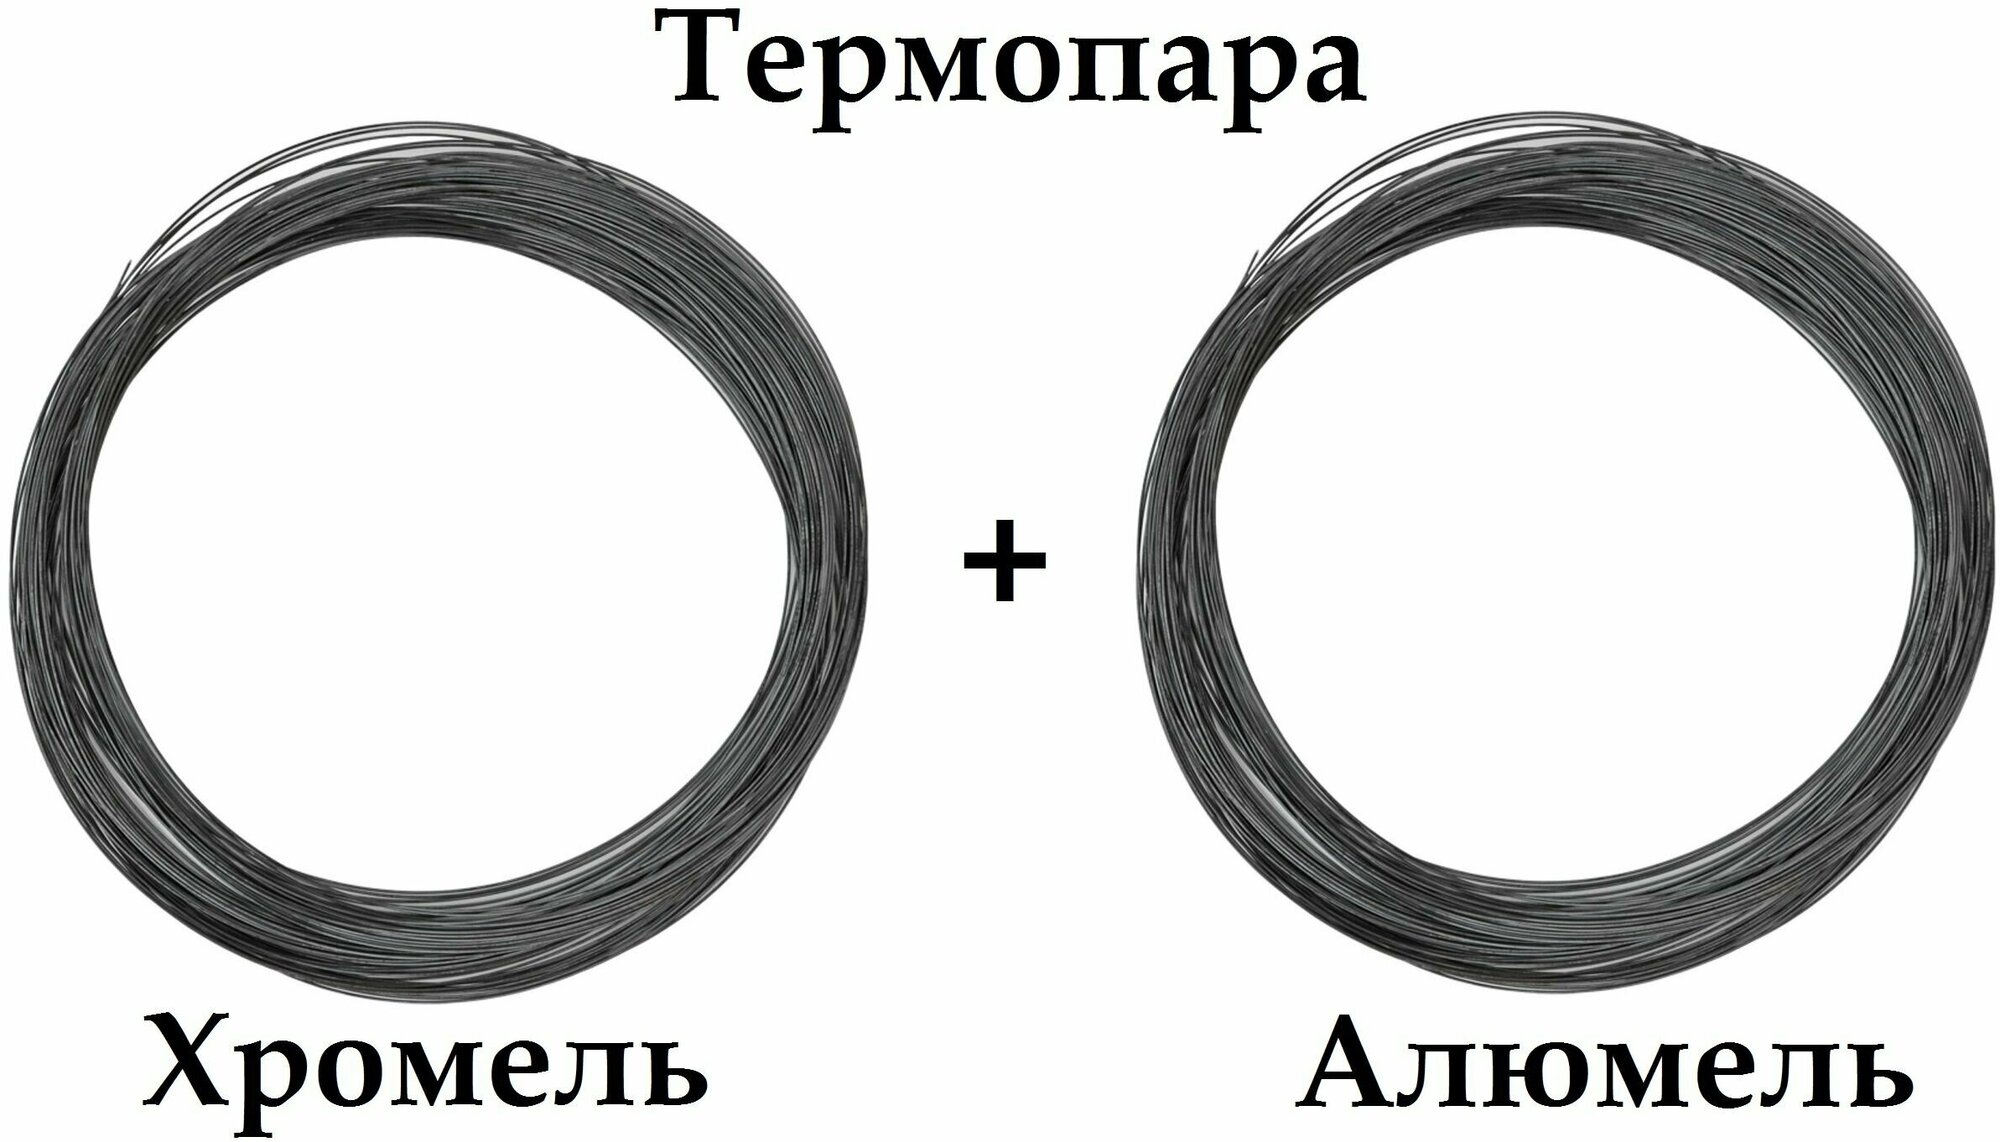 Термопара Хромель НХ95 + Алюмель нмцак 2-2-1 диаметр 15 мм -2+2 м. итого 4 метра для производства Термоэлектродов реостатов.